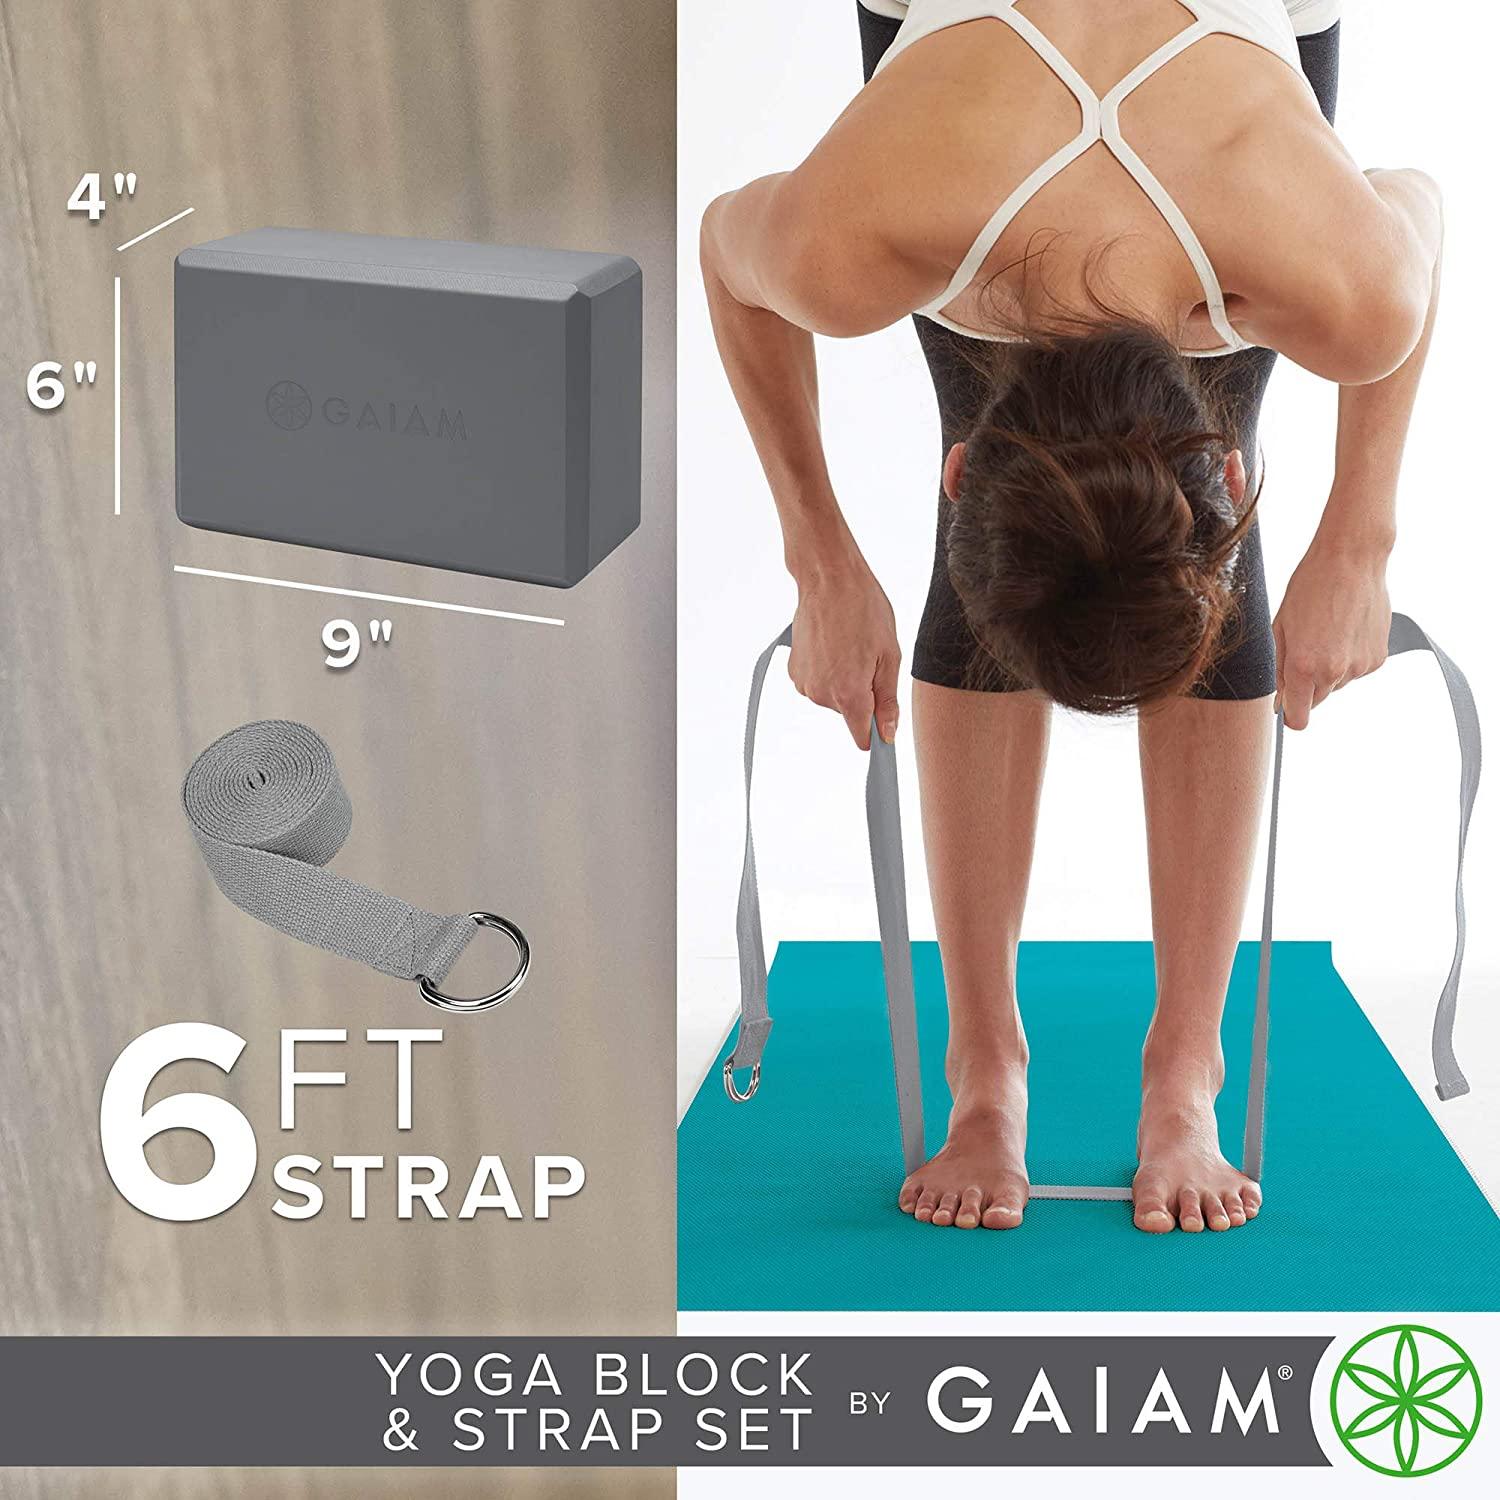 Gaiam Yoga Strap, 6-ft